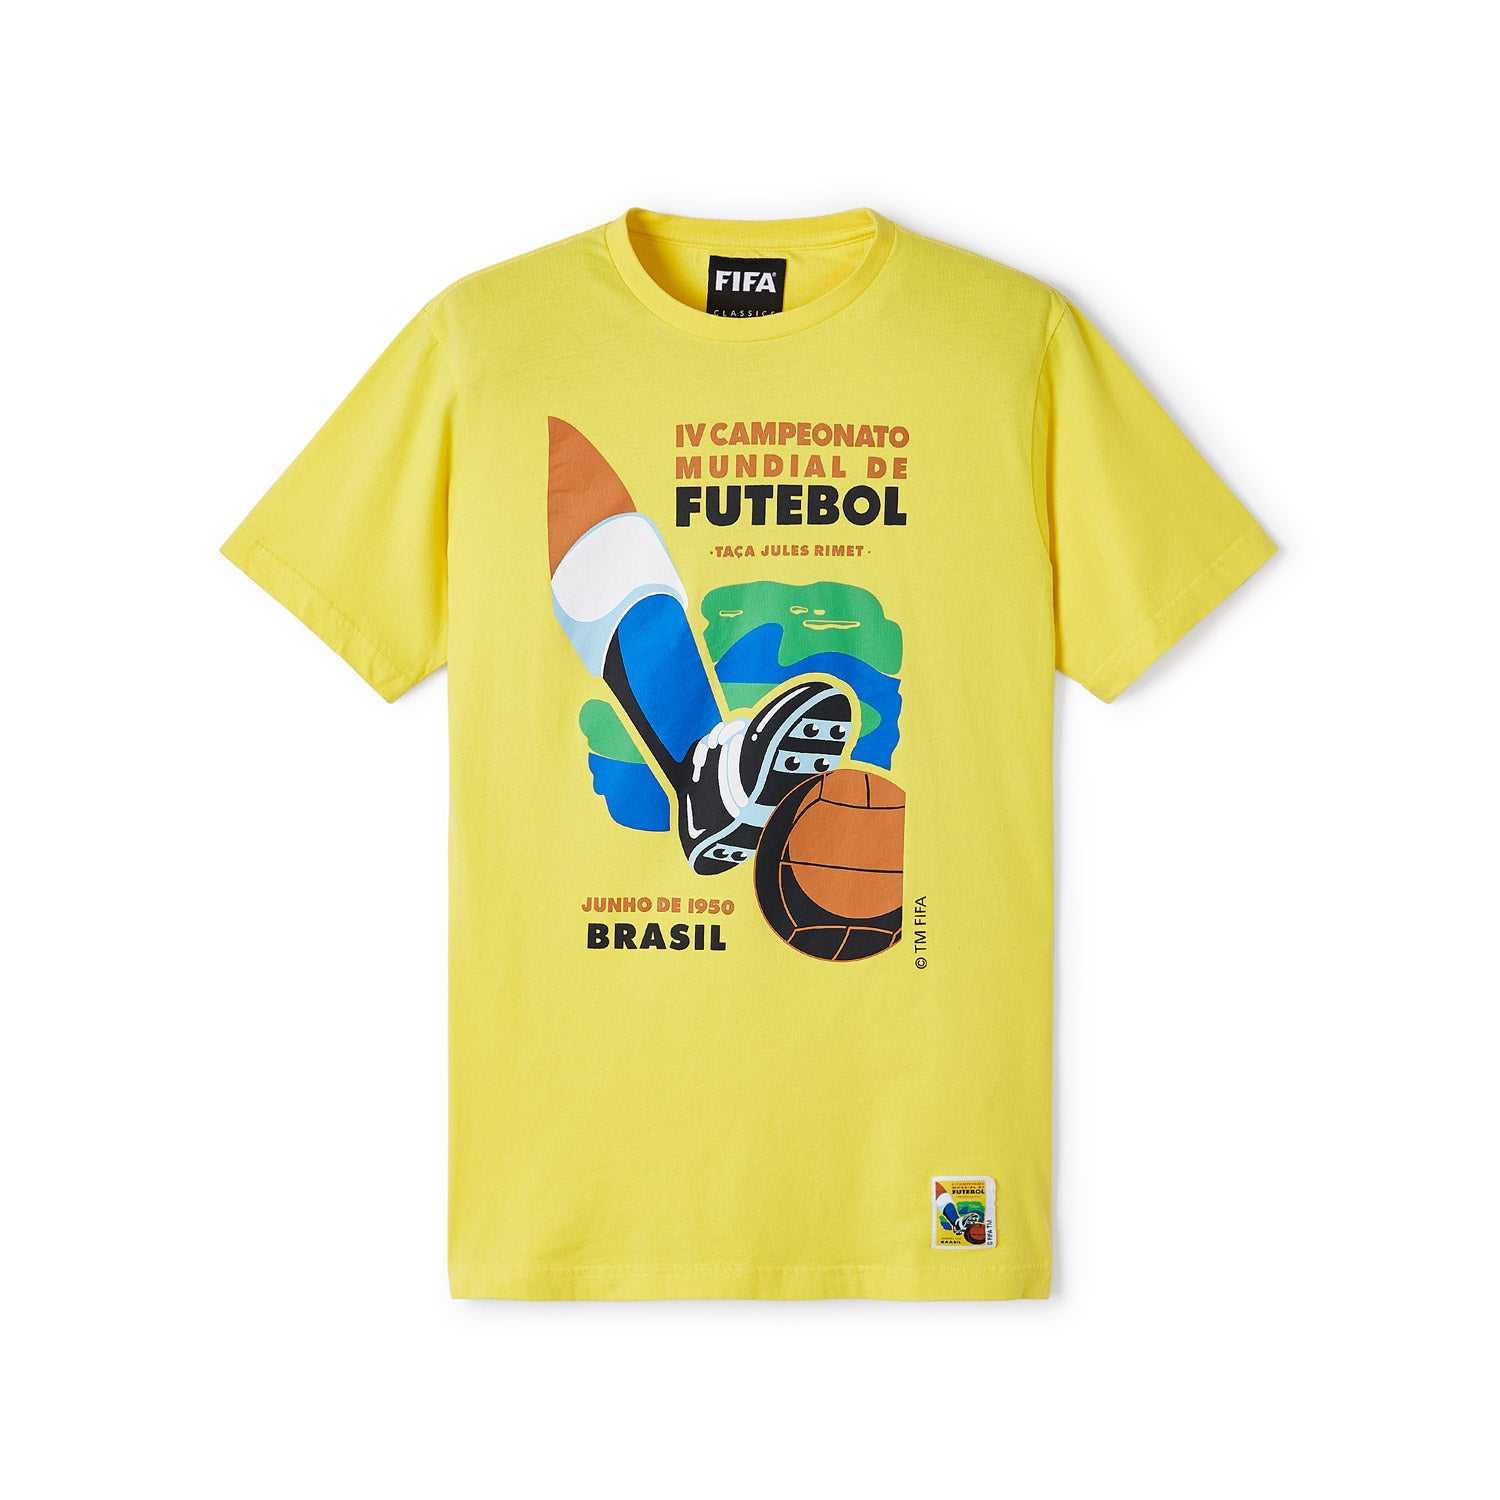 FIFA Classics 1950 World Cup Emblem T-Shirt